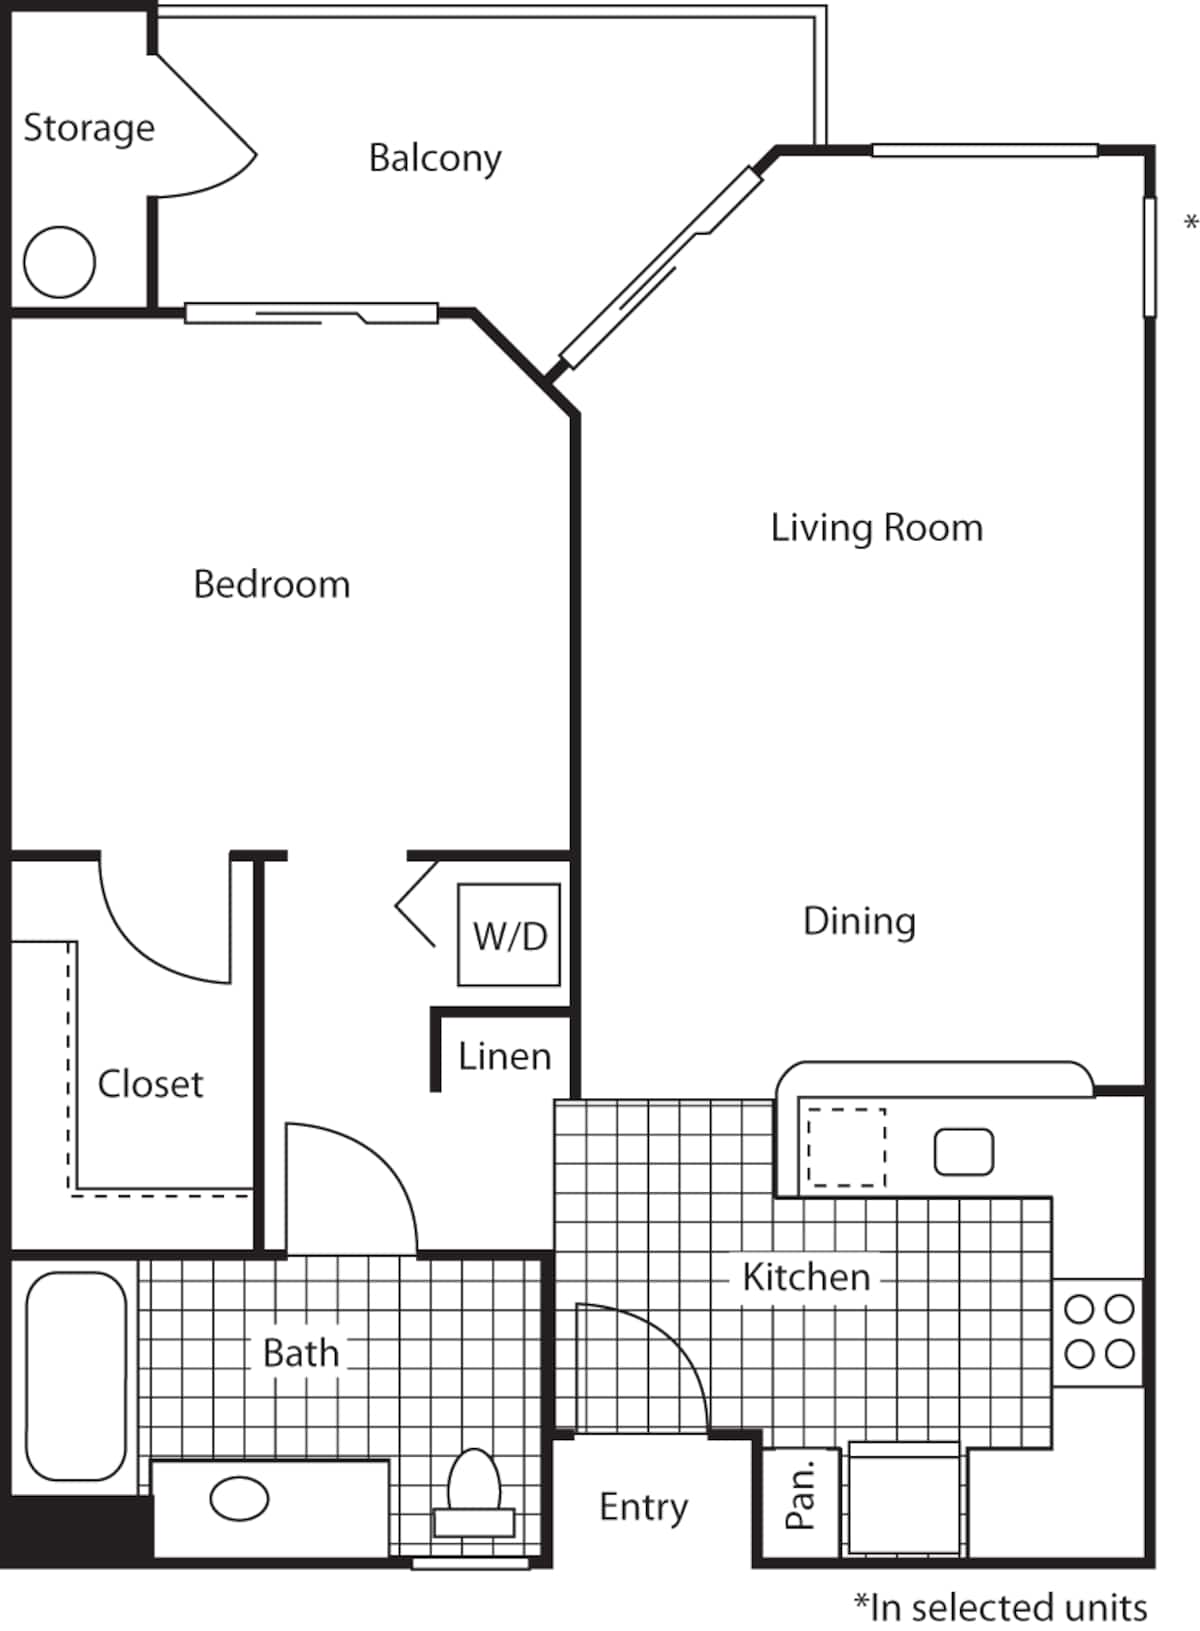 Floorplan diagram for Cottage, showing 1 bedroom